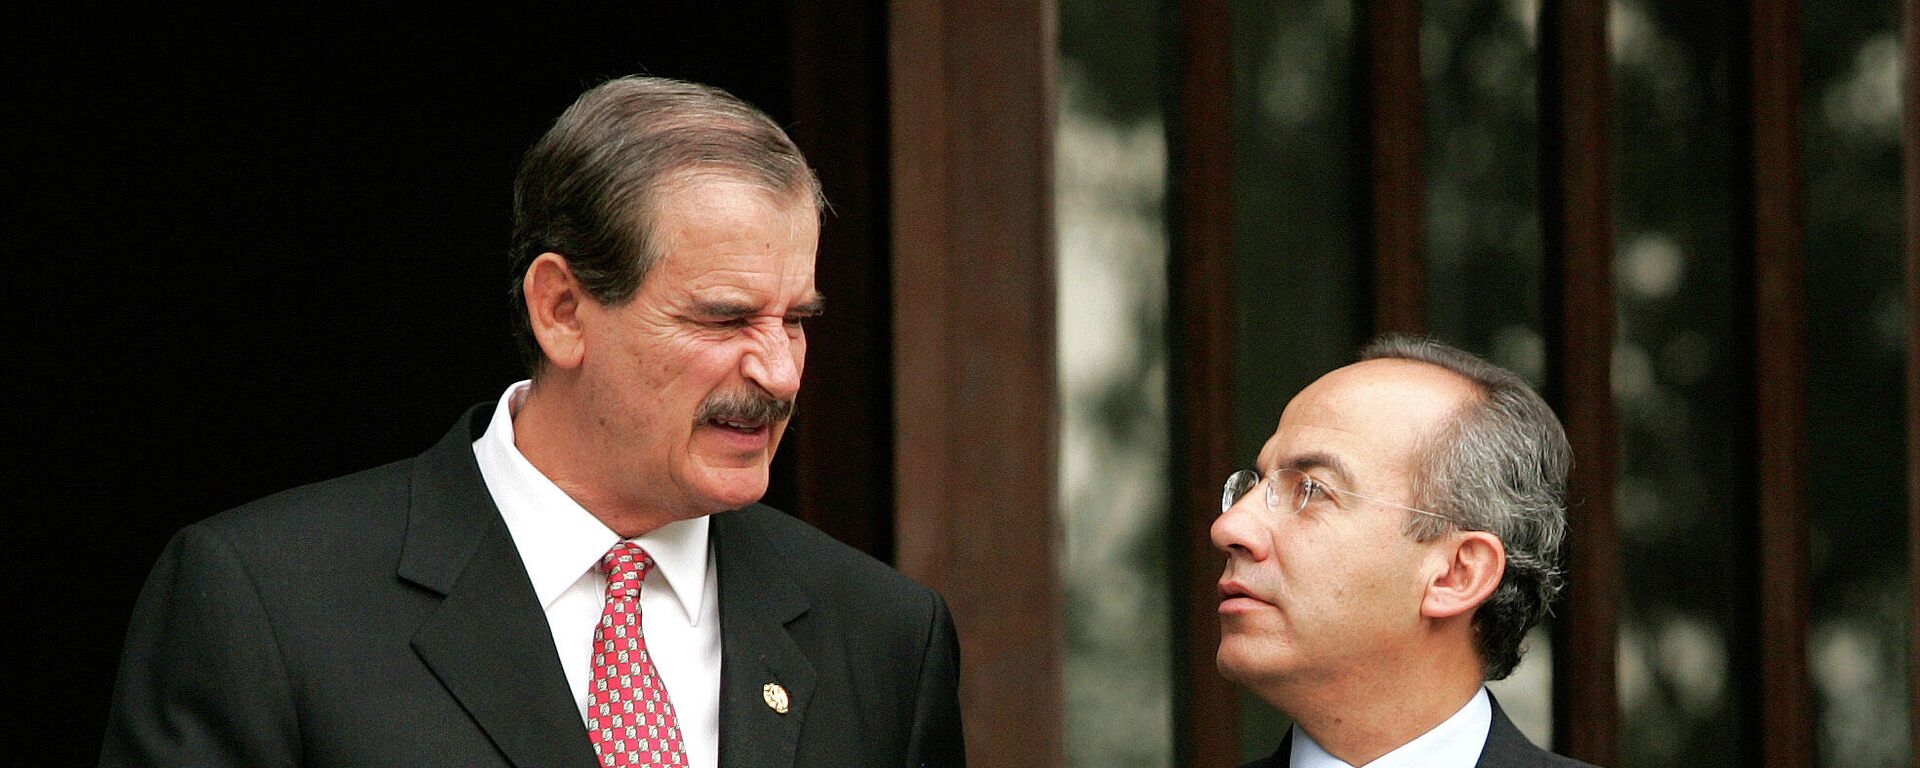 Los expresidentes mexicanos Vicente Fox y Felipe Calderón, Ciudad de México, el 21 de septiembre de 2006 - Sputnik Mundo, 1920, 01.08.2021